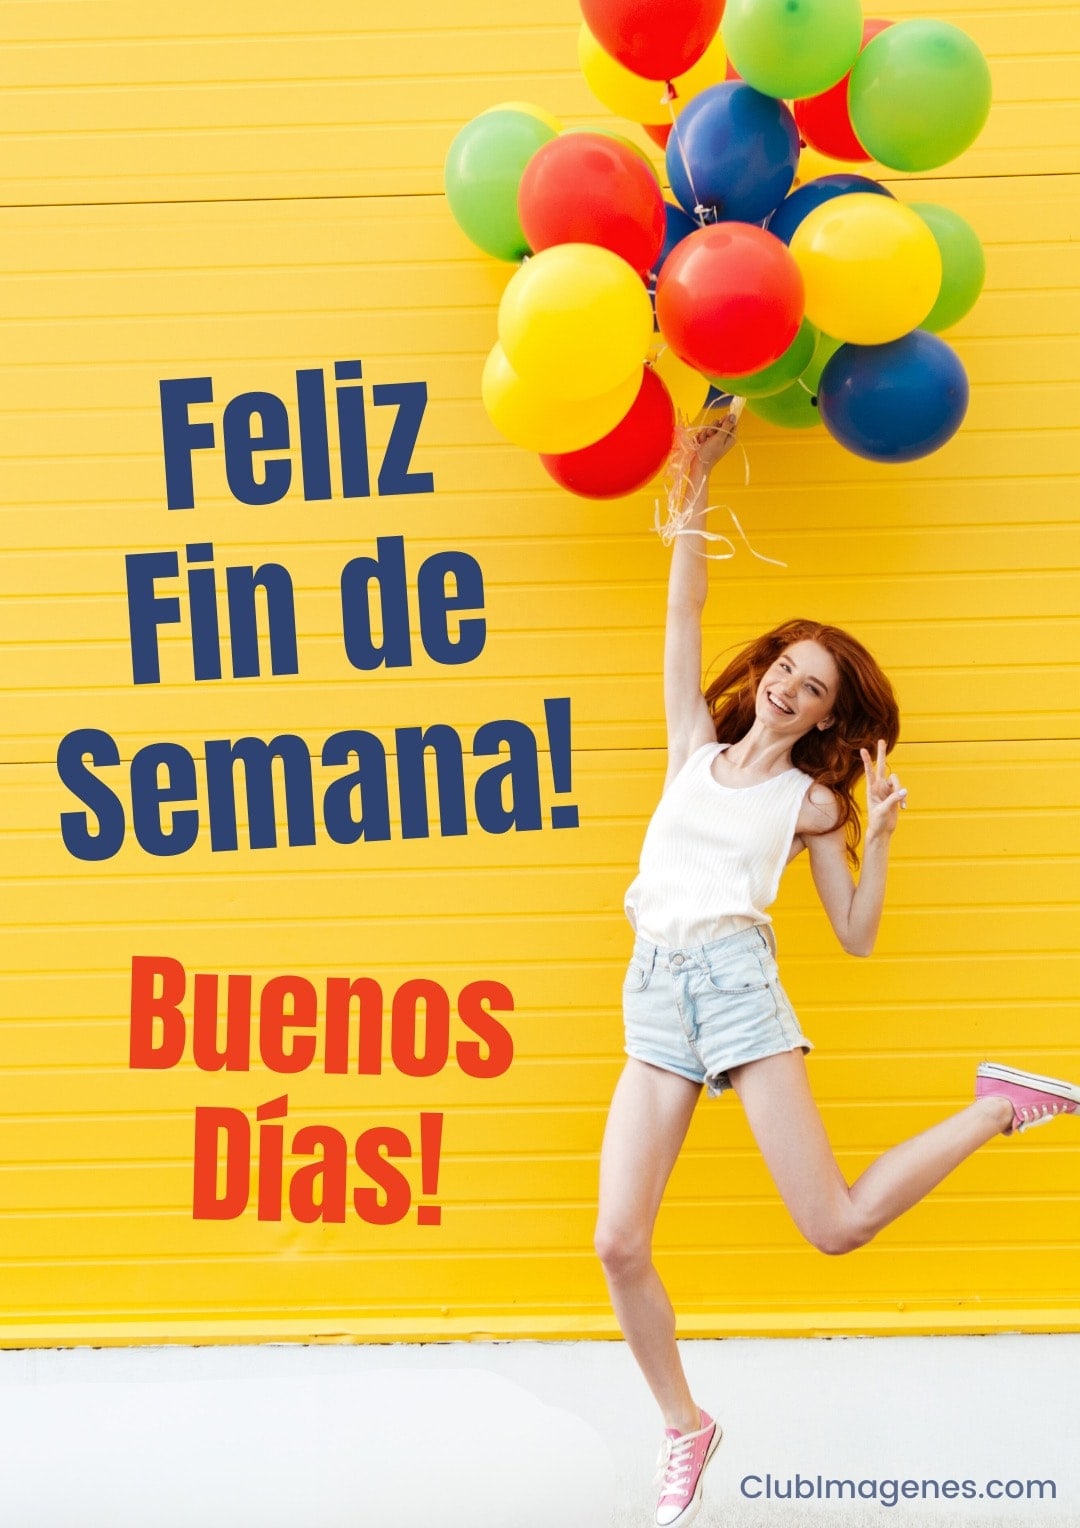 Mujer sonriente con globos frente a pared amarilla. Texto dice 'Feliz Fin de Semana! Buenos Días!'